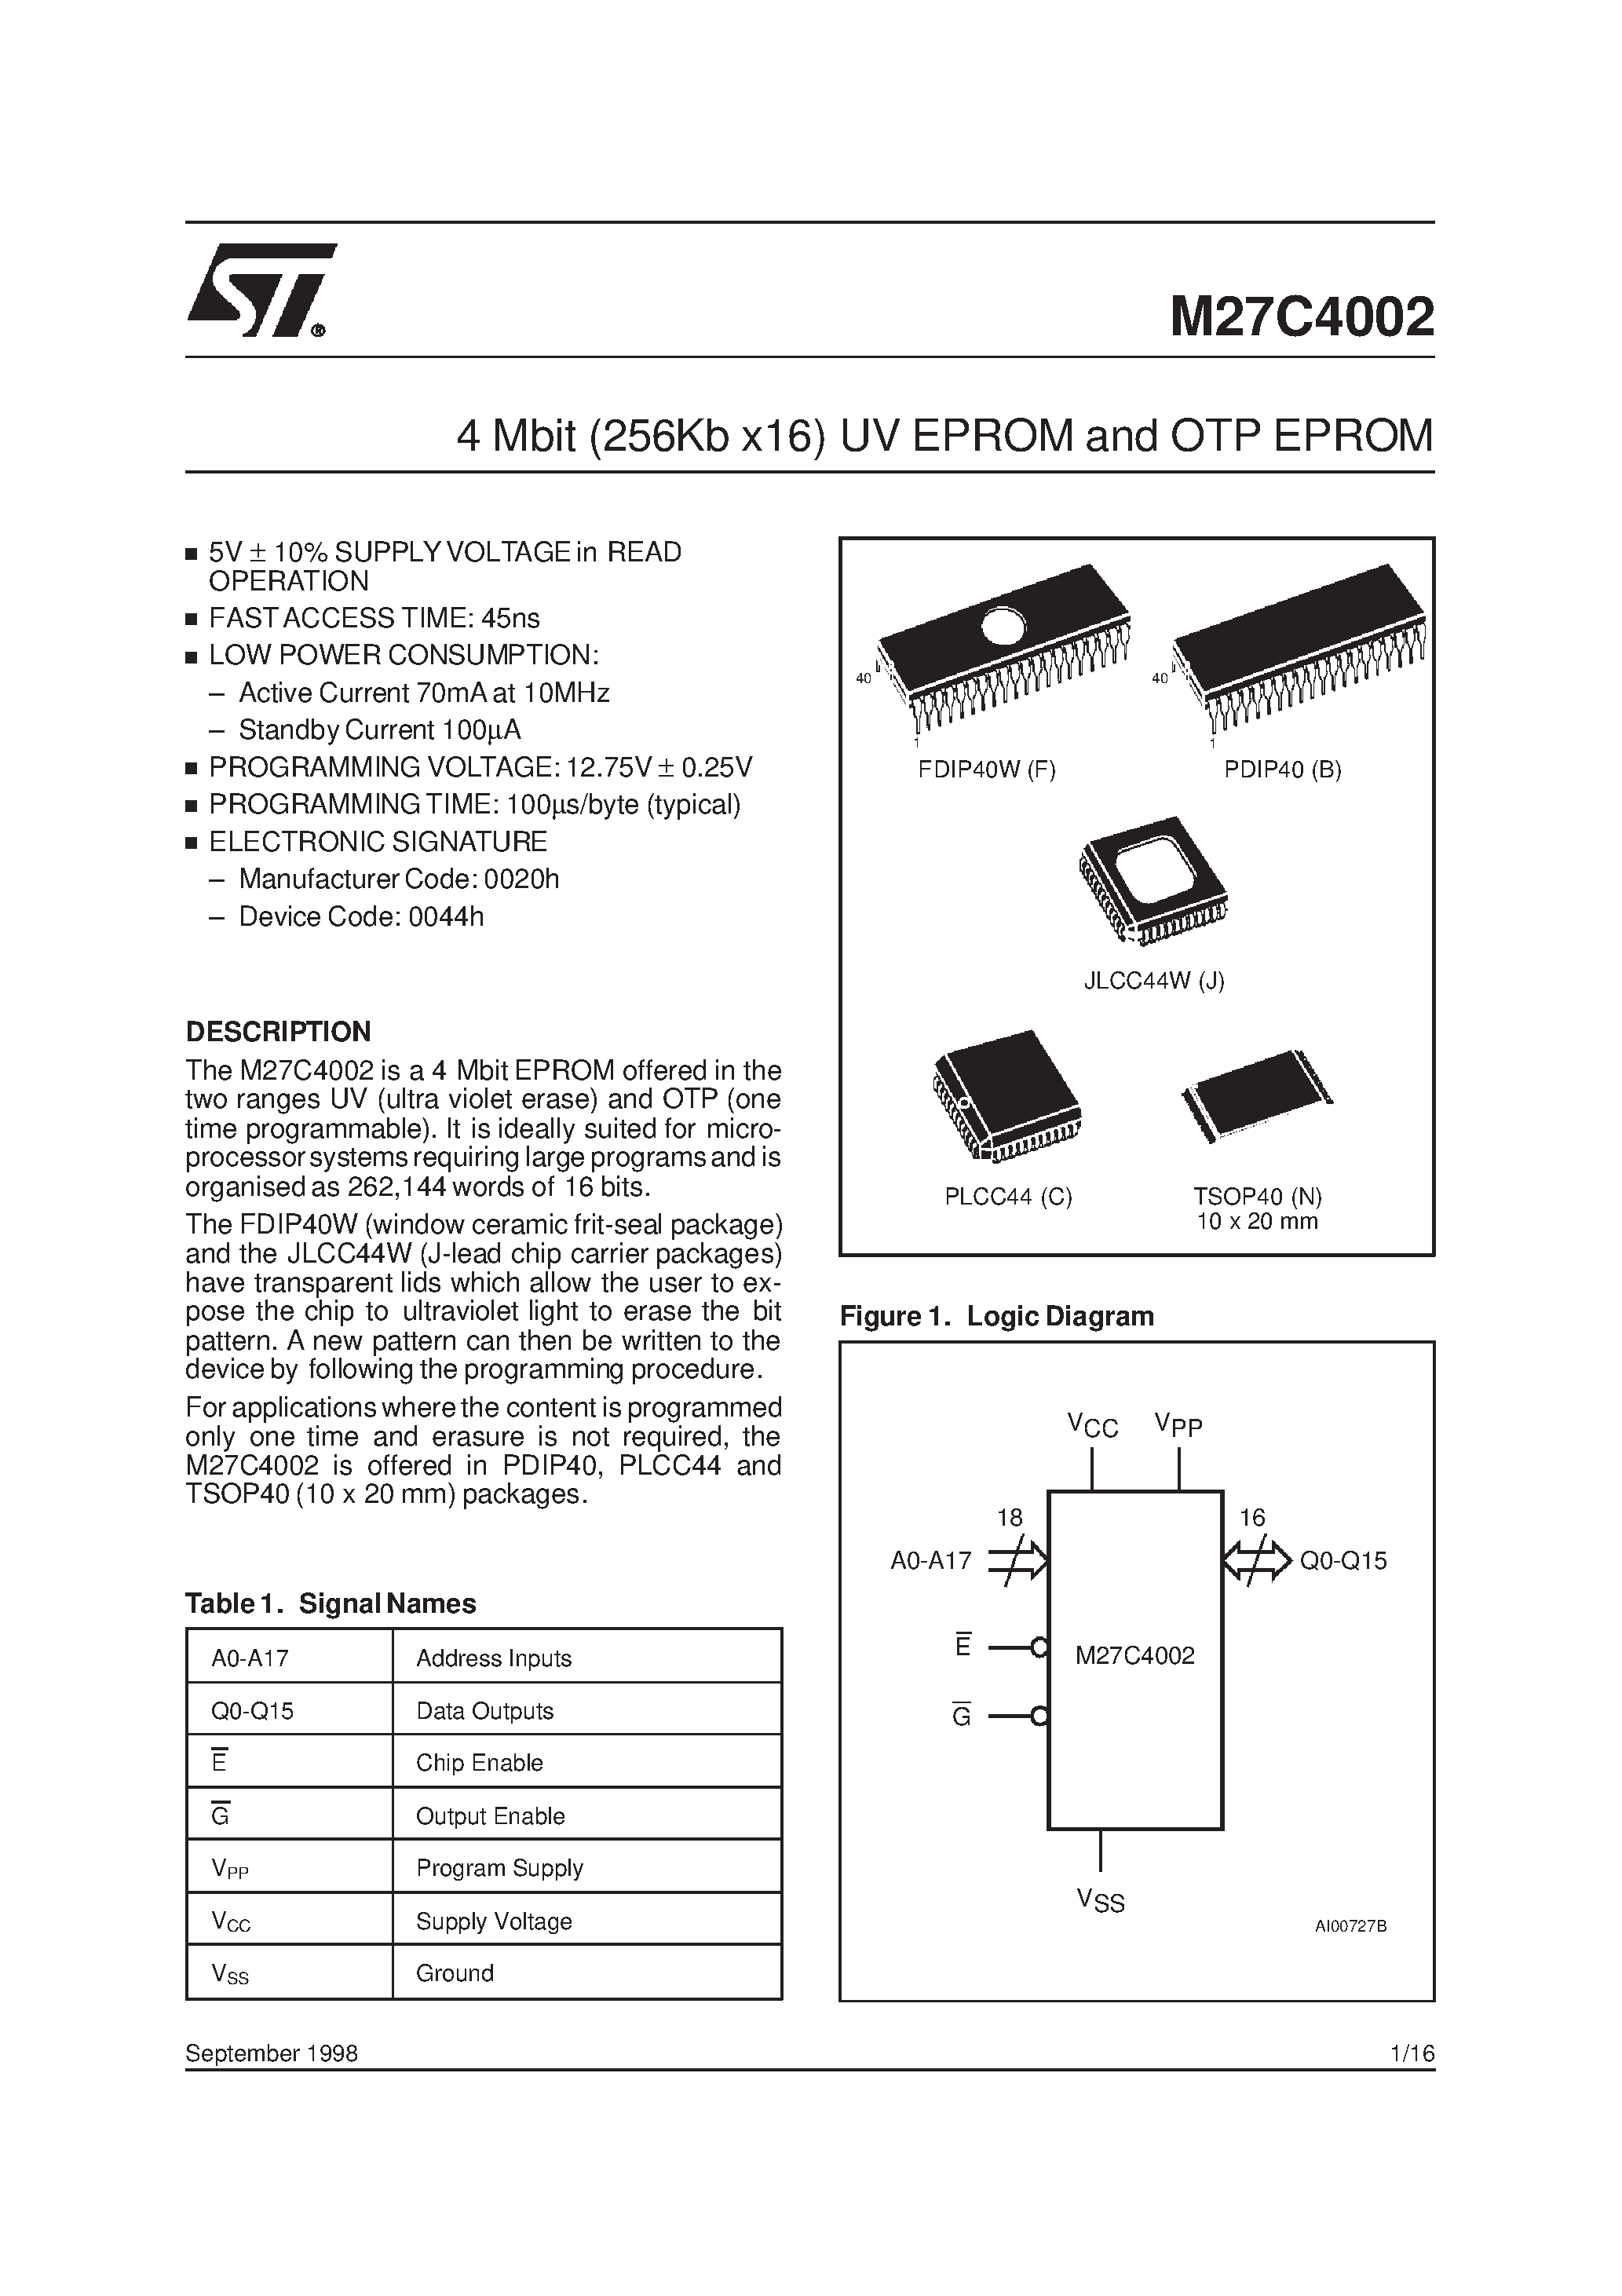 Datasheet M27C4002-10XC1TR - 4 Mbit 256Kb x16 UV EPROM and OTP EPROM page 1